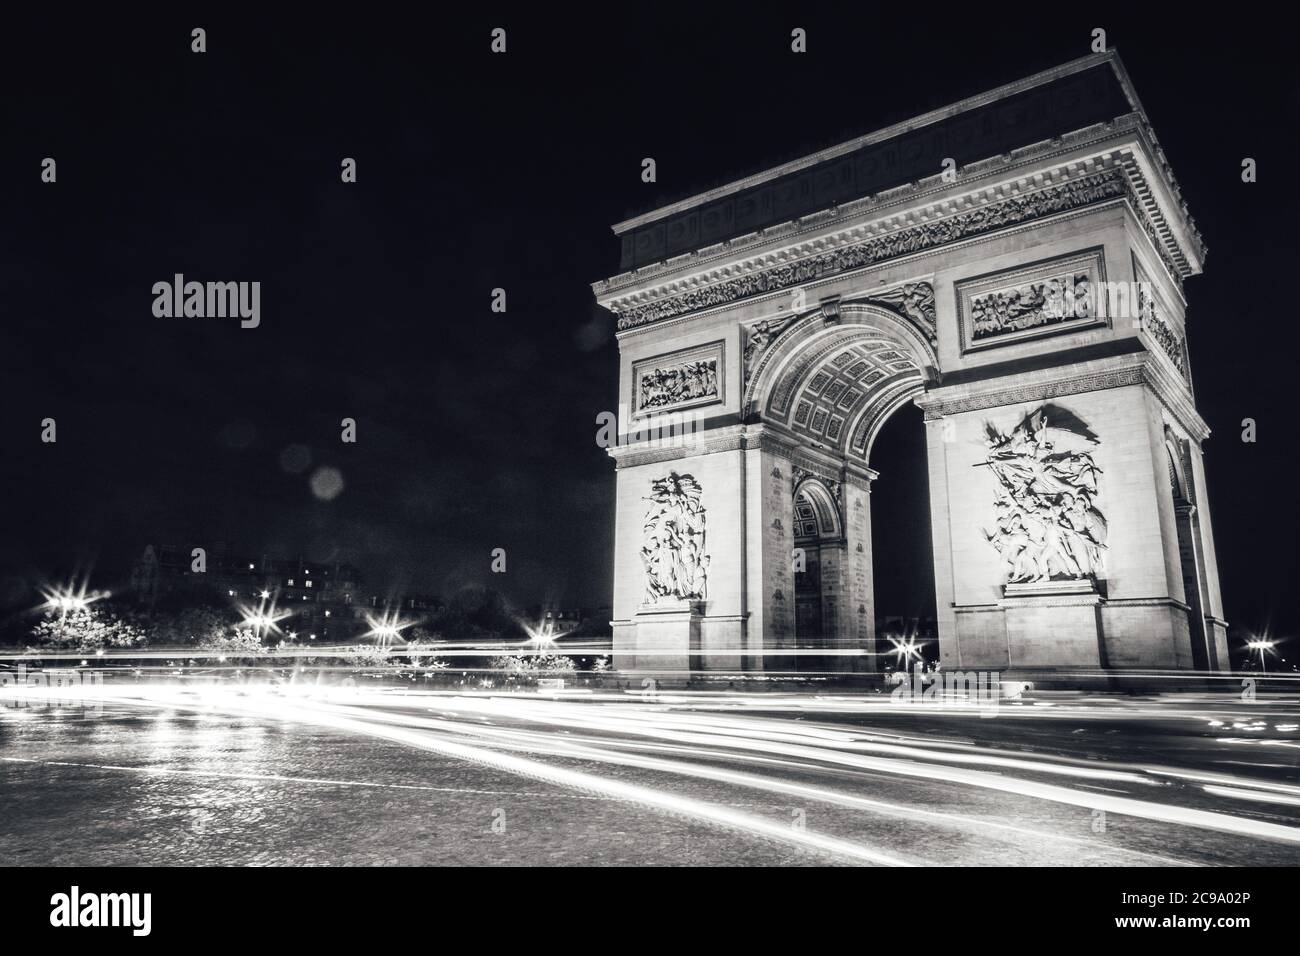 Der Arc de Triomphe de l'Étoile ist eines der berühmtesten Monumente in Paris, Frankreich, am westlichen Ende der Champs-Élysées.bei Nacht aufgenommen Stockfoto